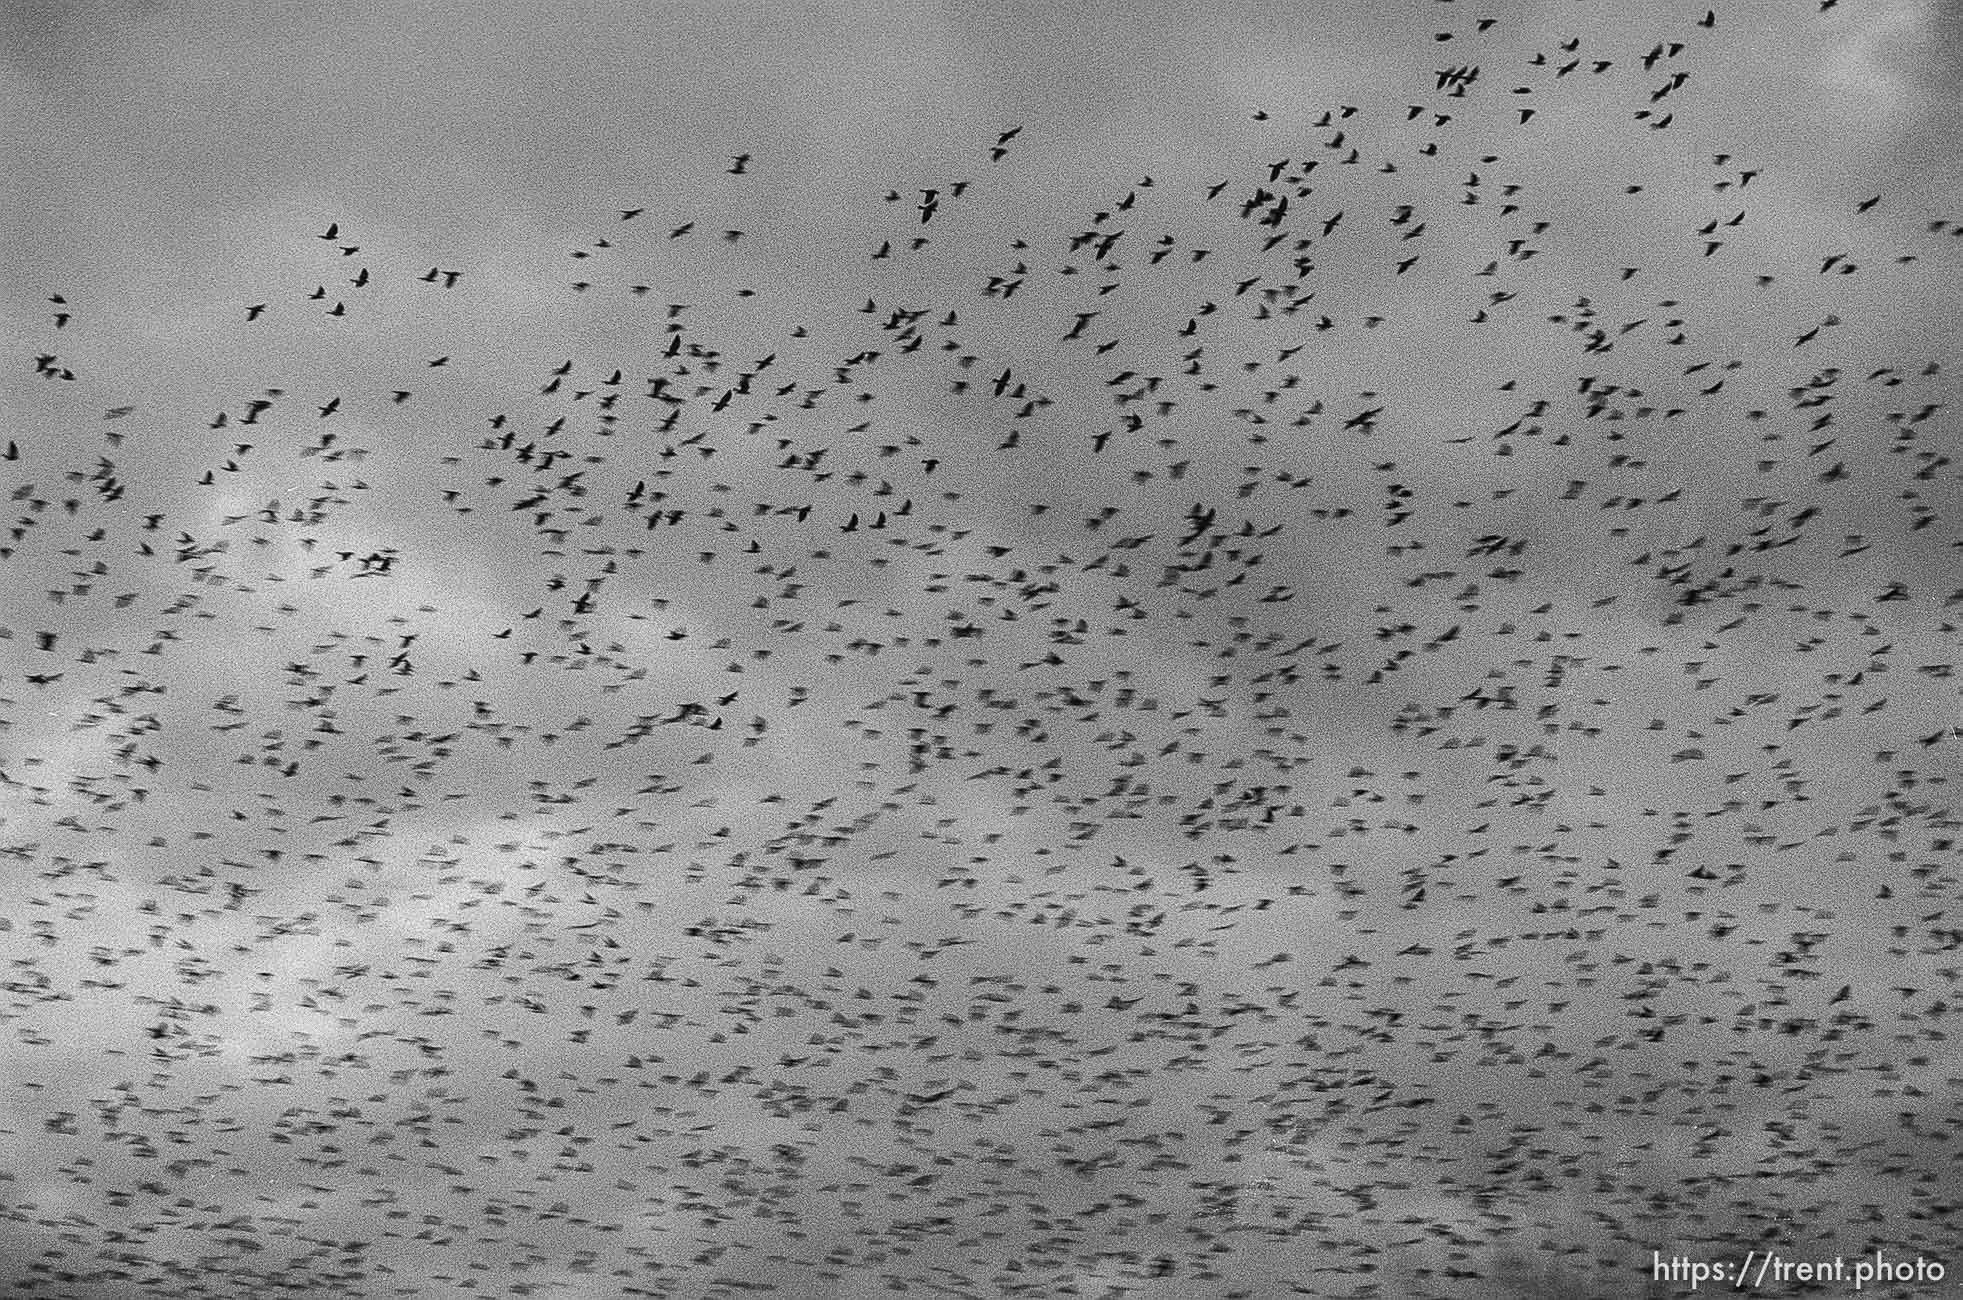 Blackbirds over Kosovo